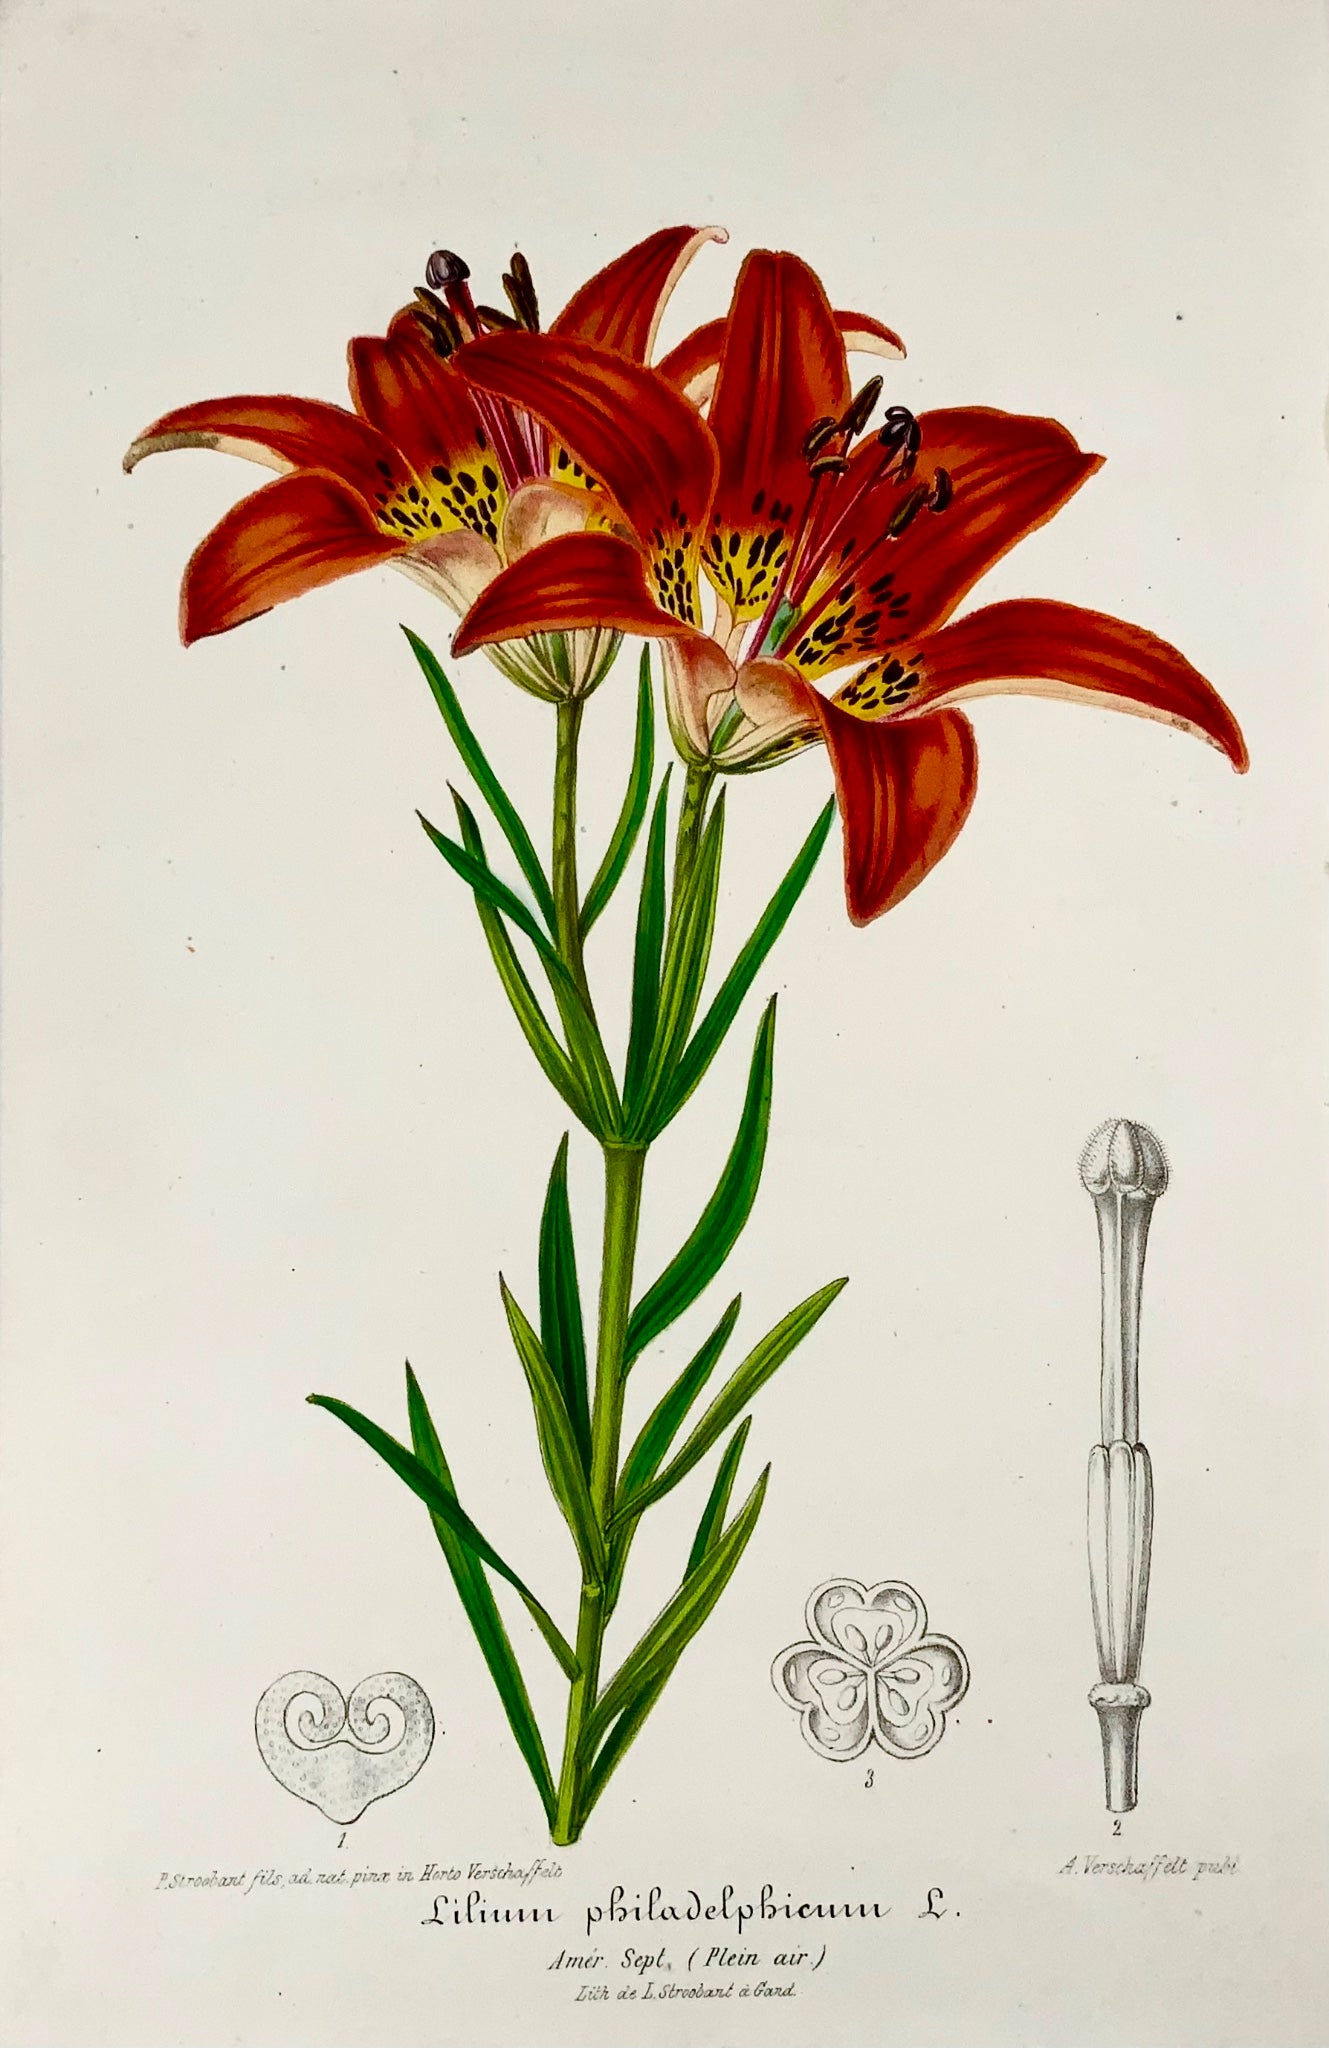 1850 Giglio di legno, L. Stroobant, litografia con bel colore originale a mano, botanica